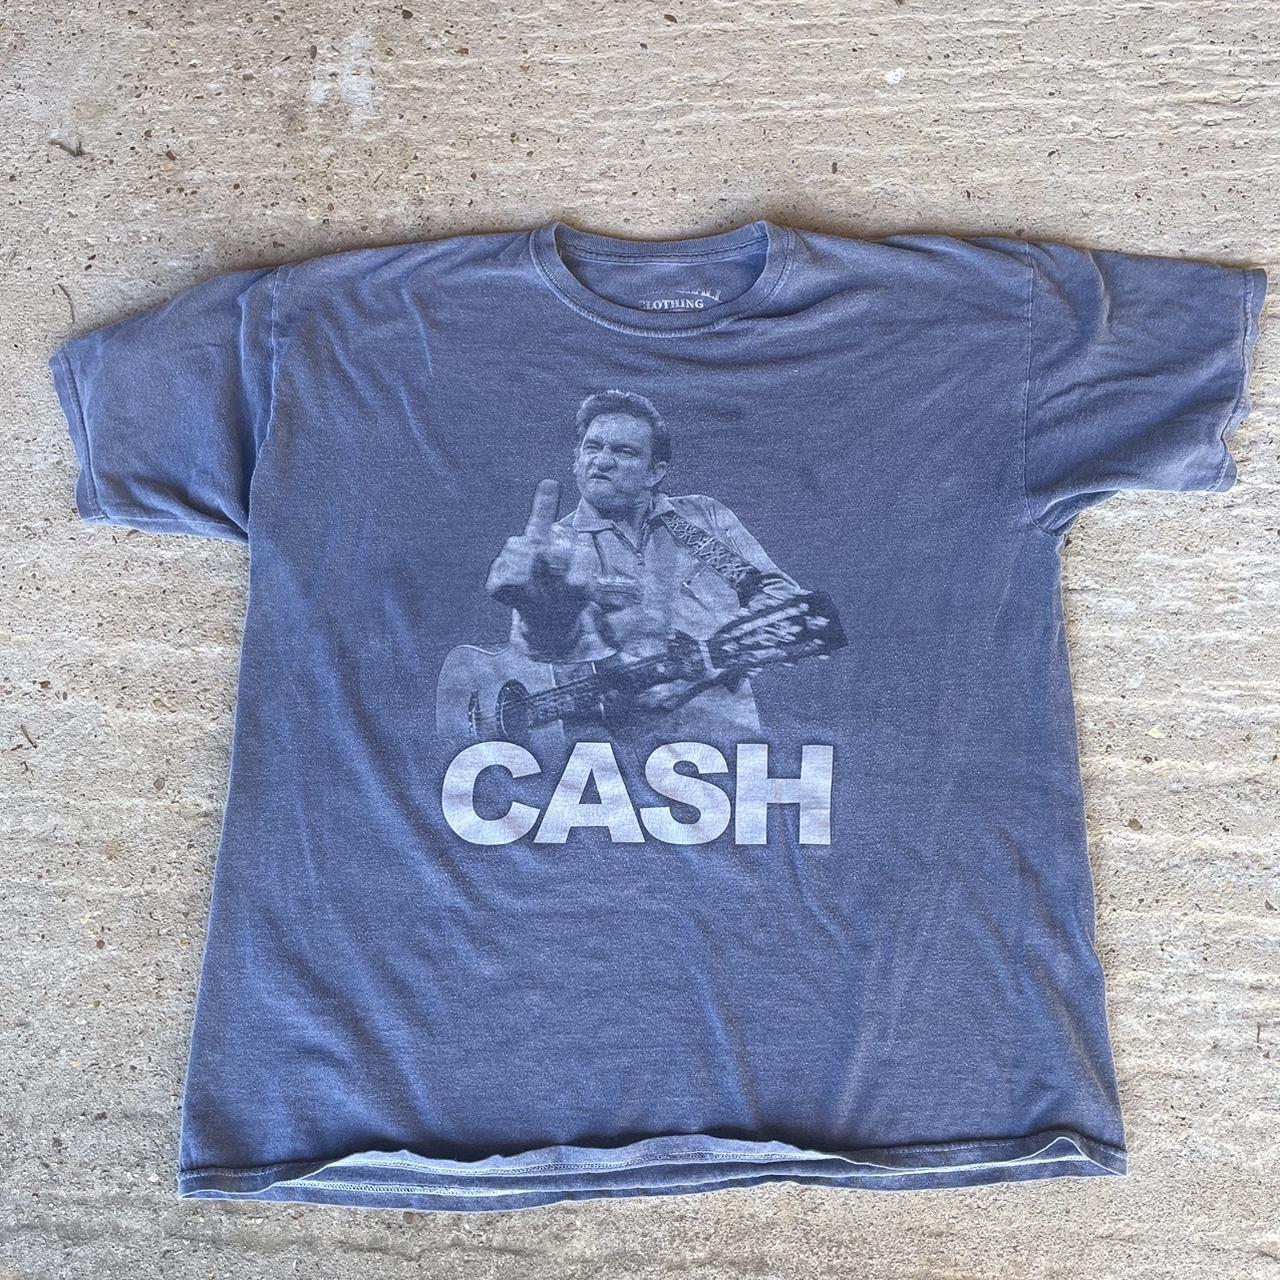 Johnny Cash Middle Finger T Shirt Size XL (see... - Depop